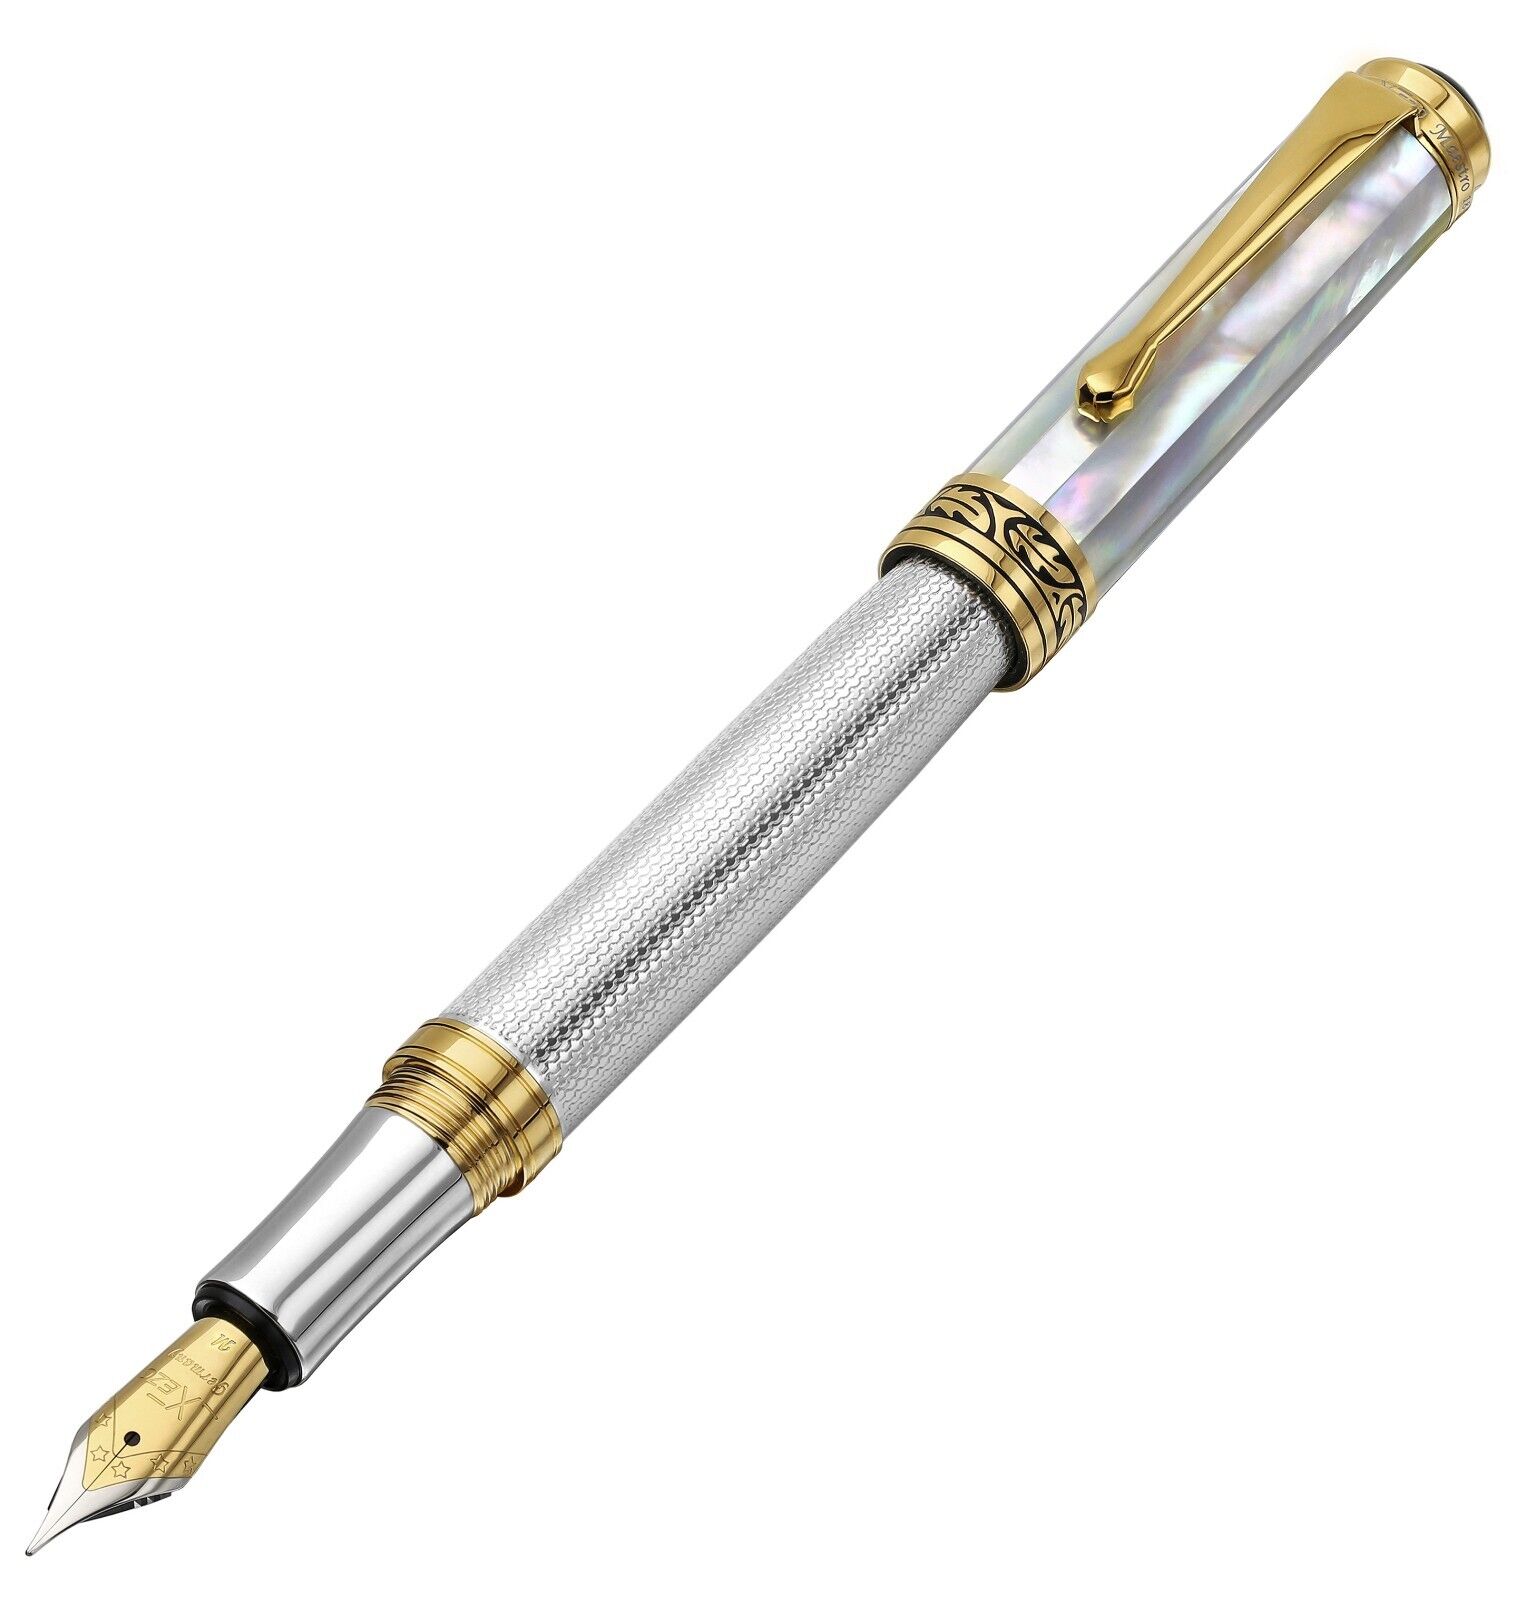 Xezo Maestro Medium Fountain Pen, White Mother of Pearl & Sterling Silver. LE